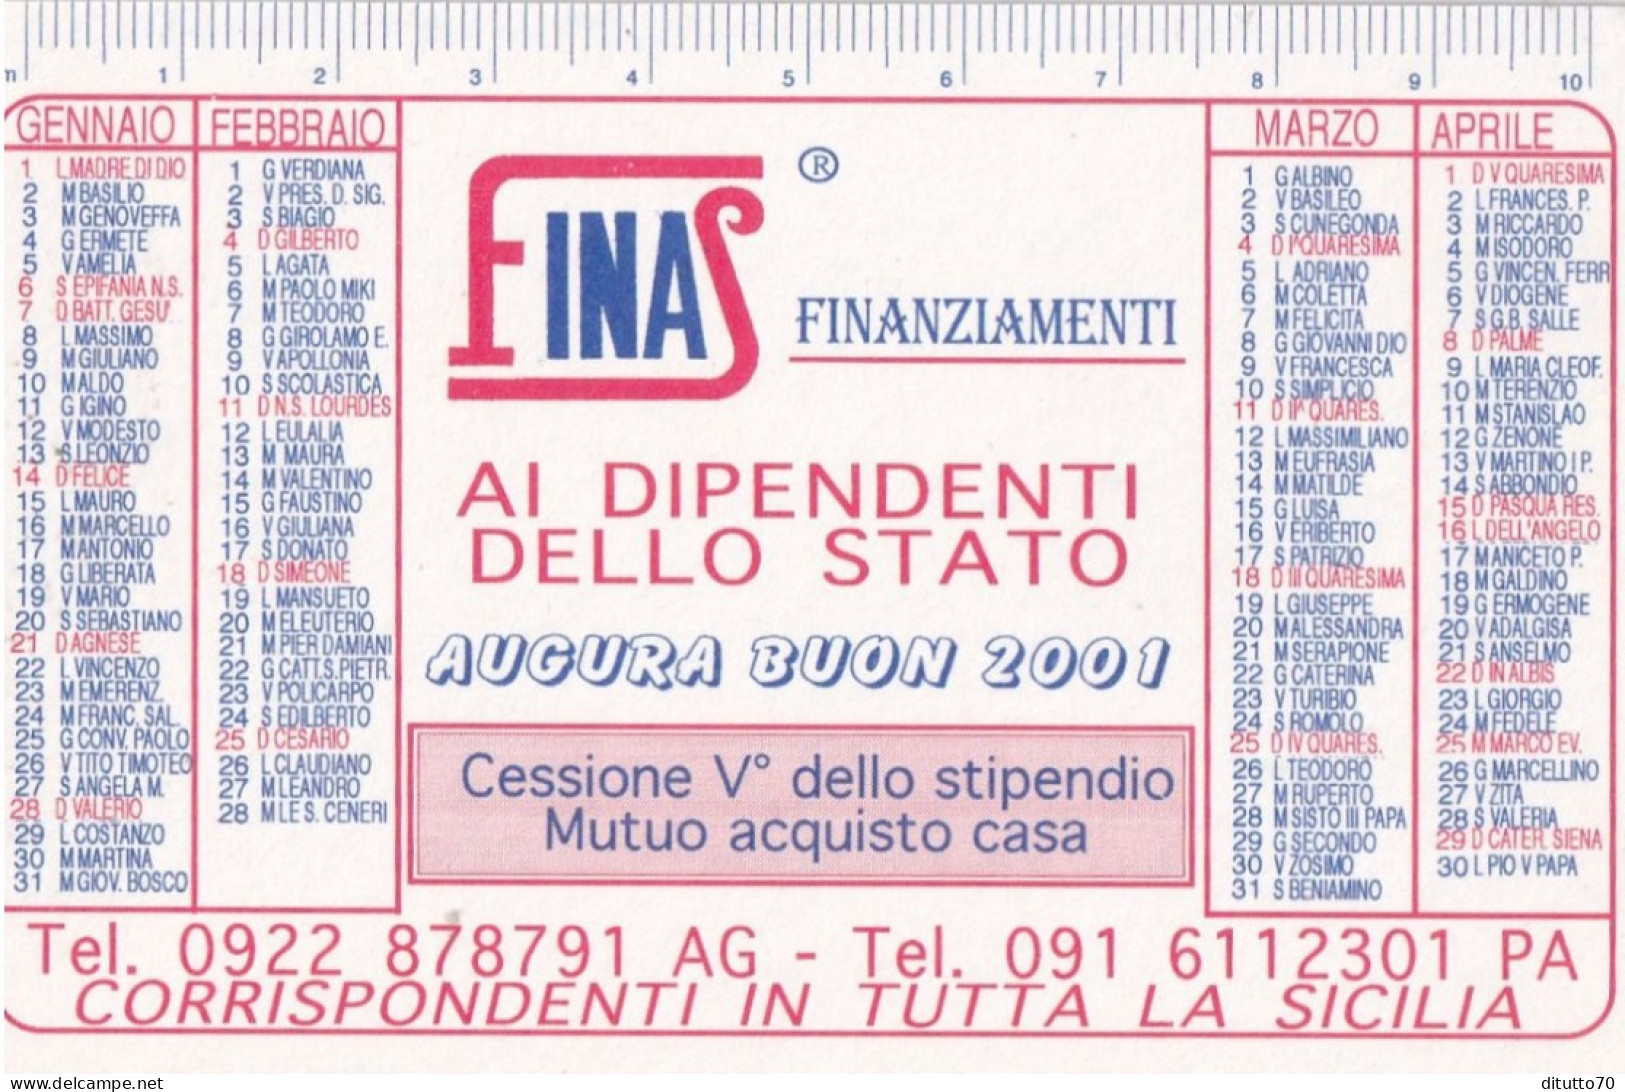 Calendarietto - Finas - Finanziamenti - Corrispondenti Per Tutta La Sicilia - Anno 2001 - Kleinformat : 2001-...